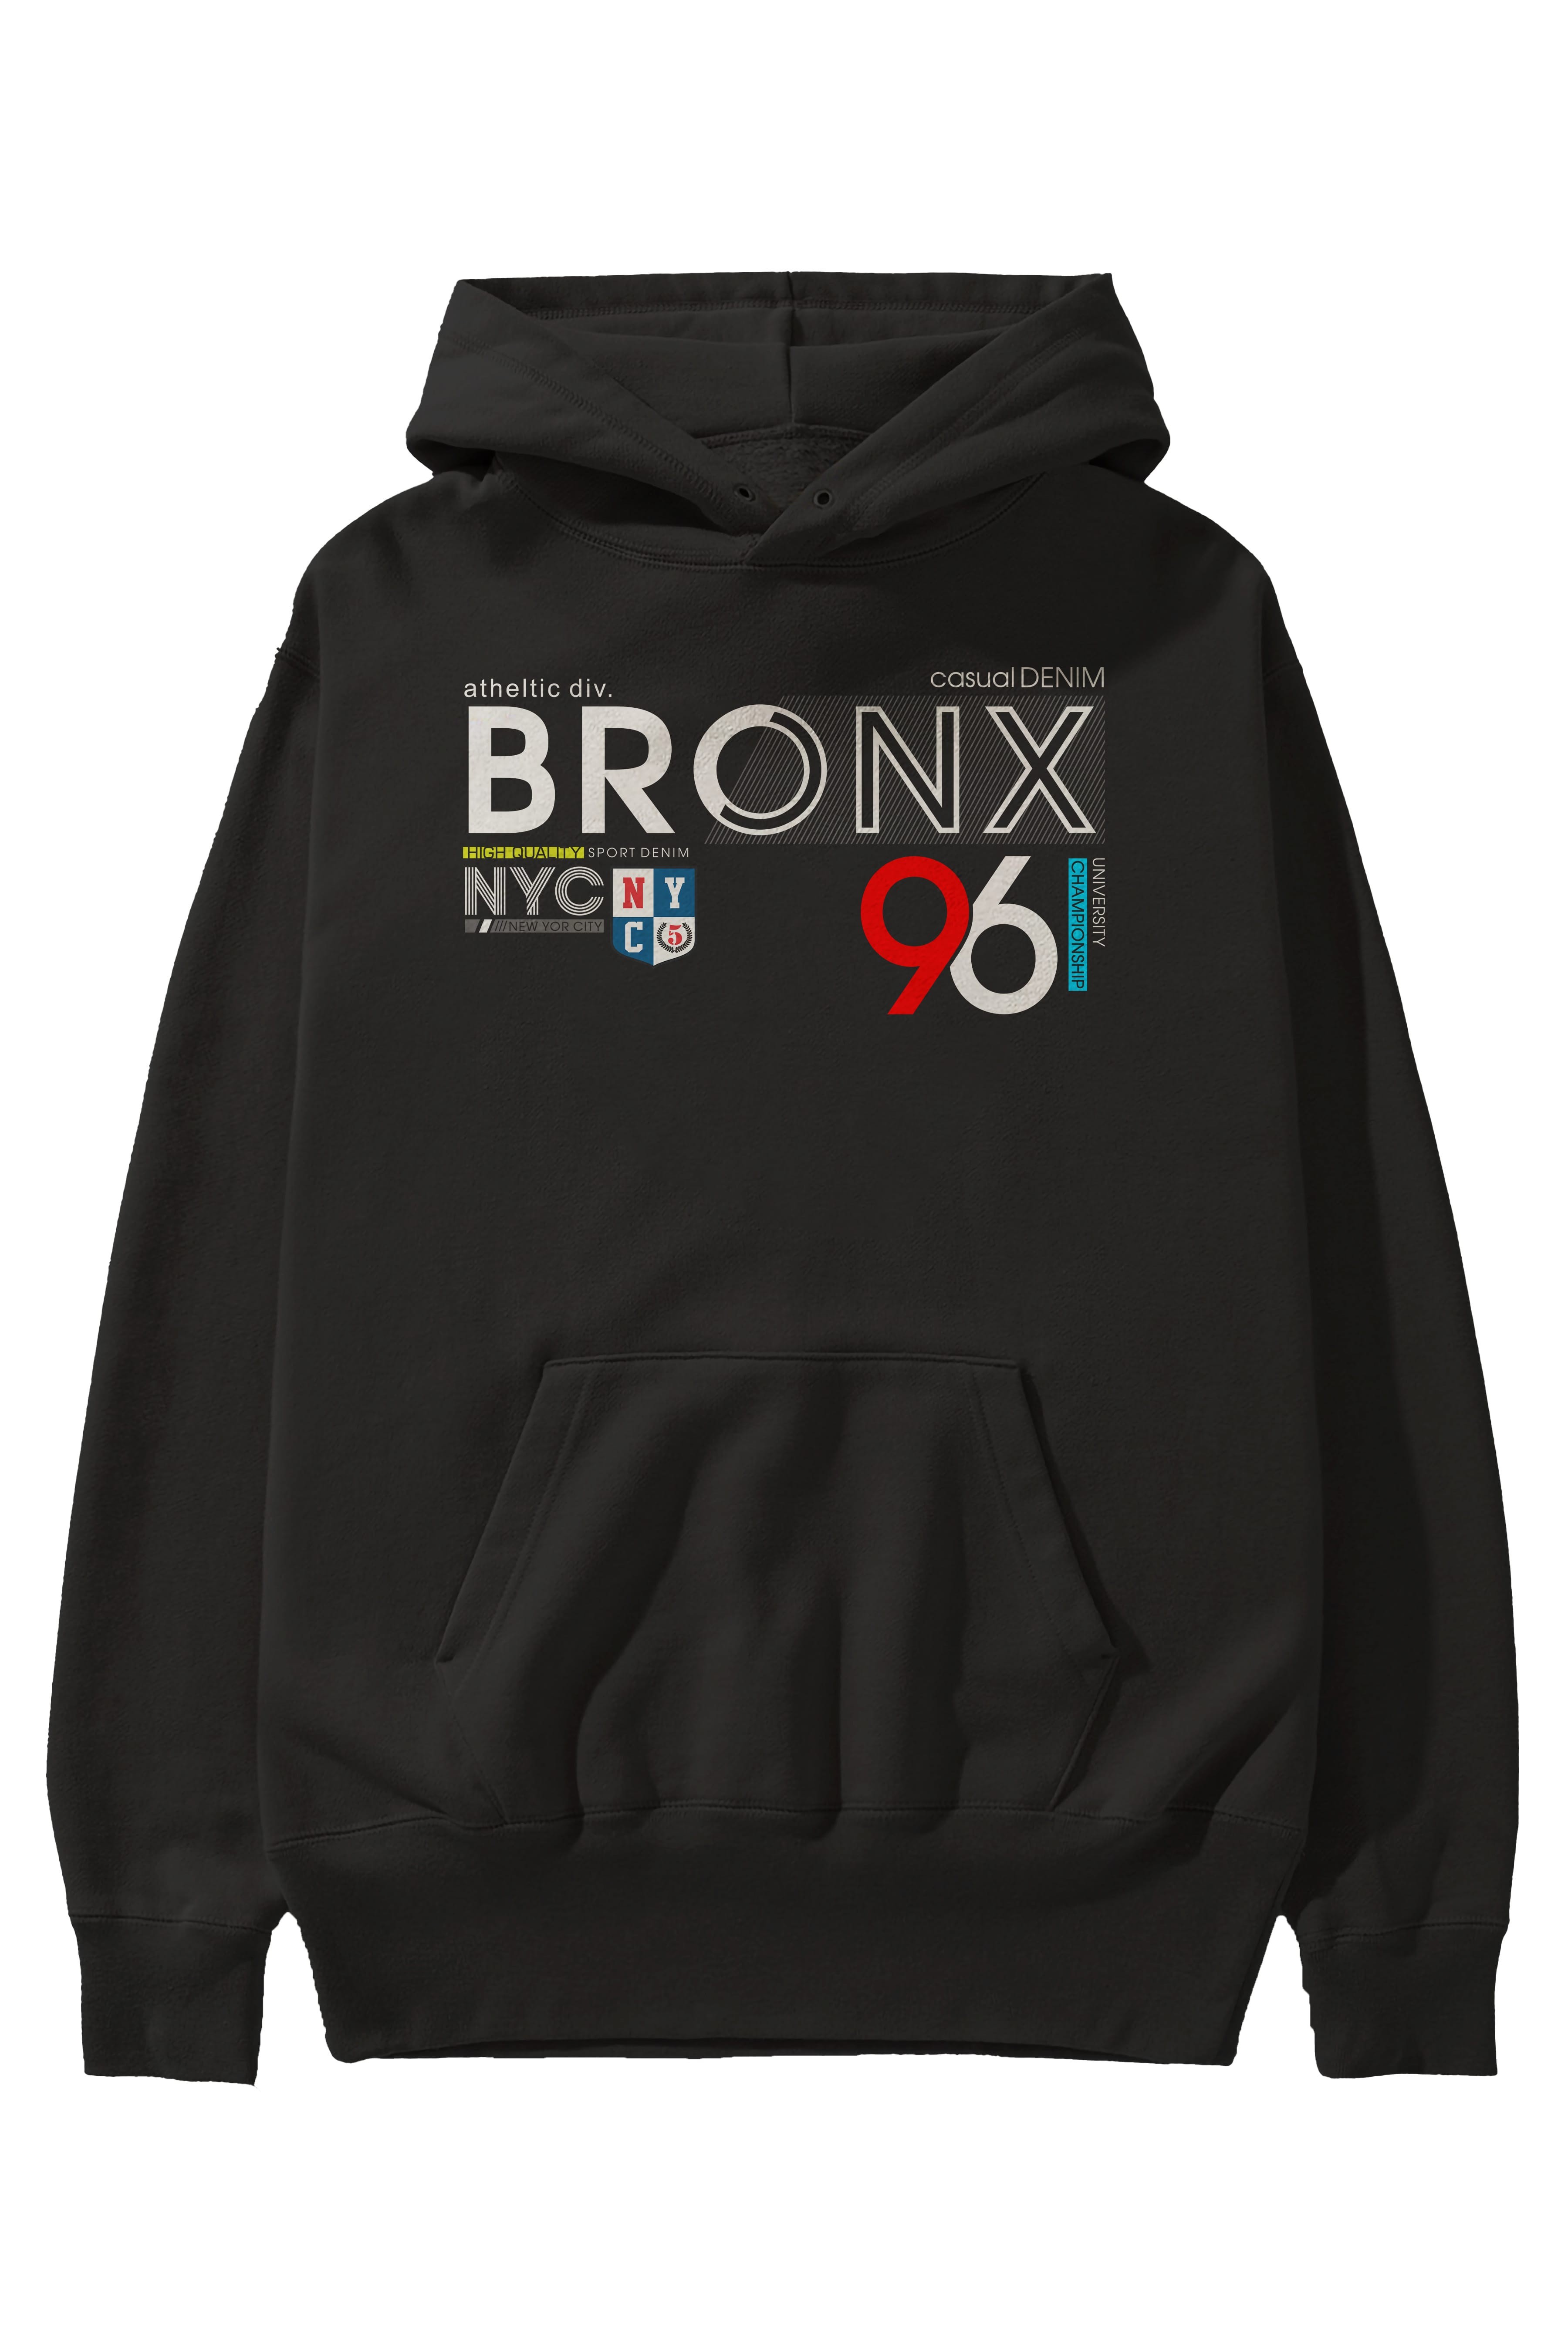 Bronx 96 Ön Baskılı Oversize Hoodie Kapüşonlu Sweatshirt Erkek Kadın Unisex